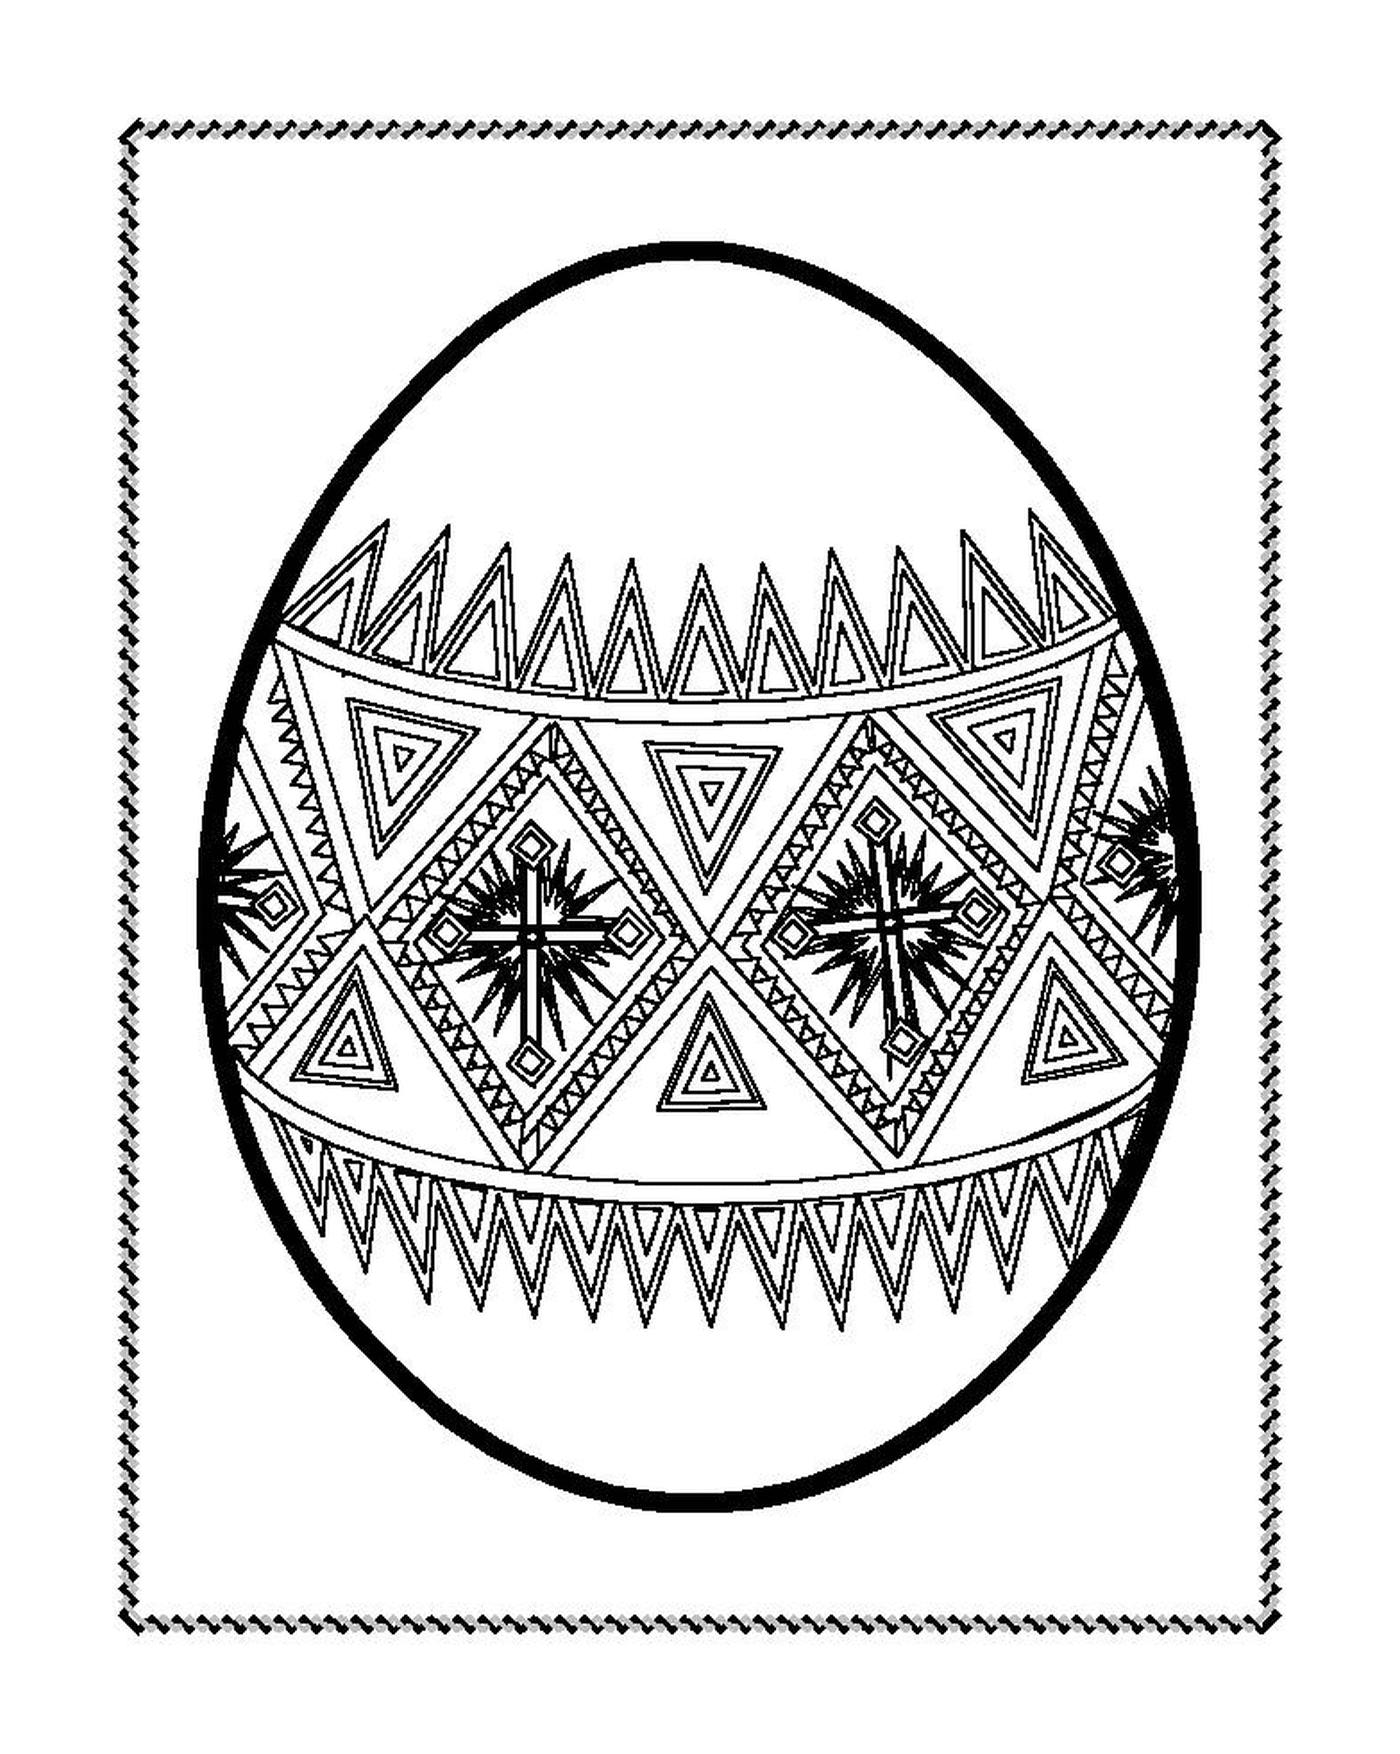  Ein Ostereier mit geometrischen Motiven verziert 